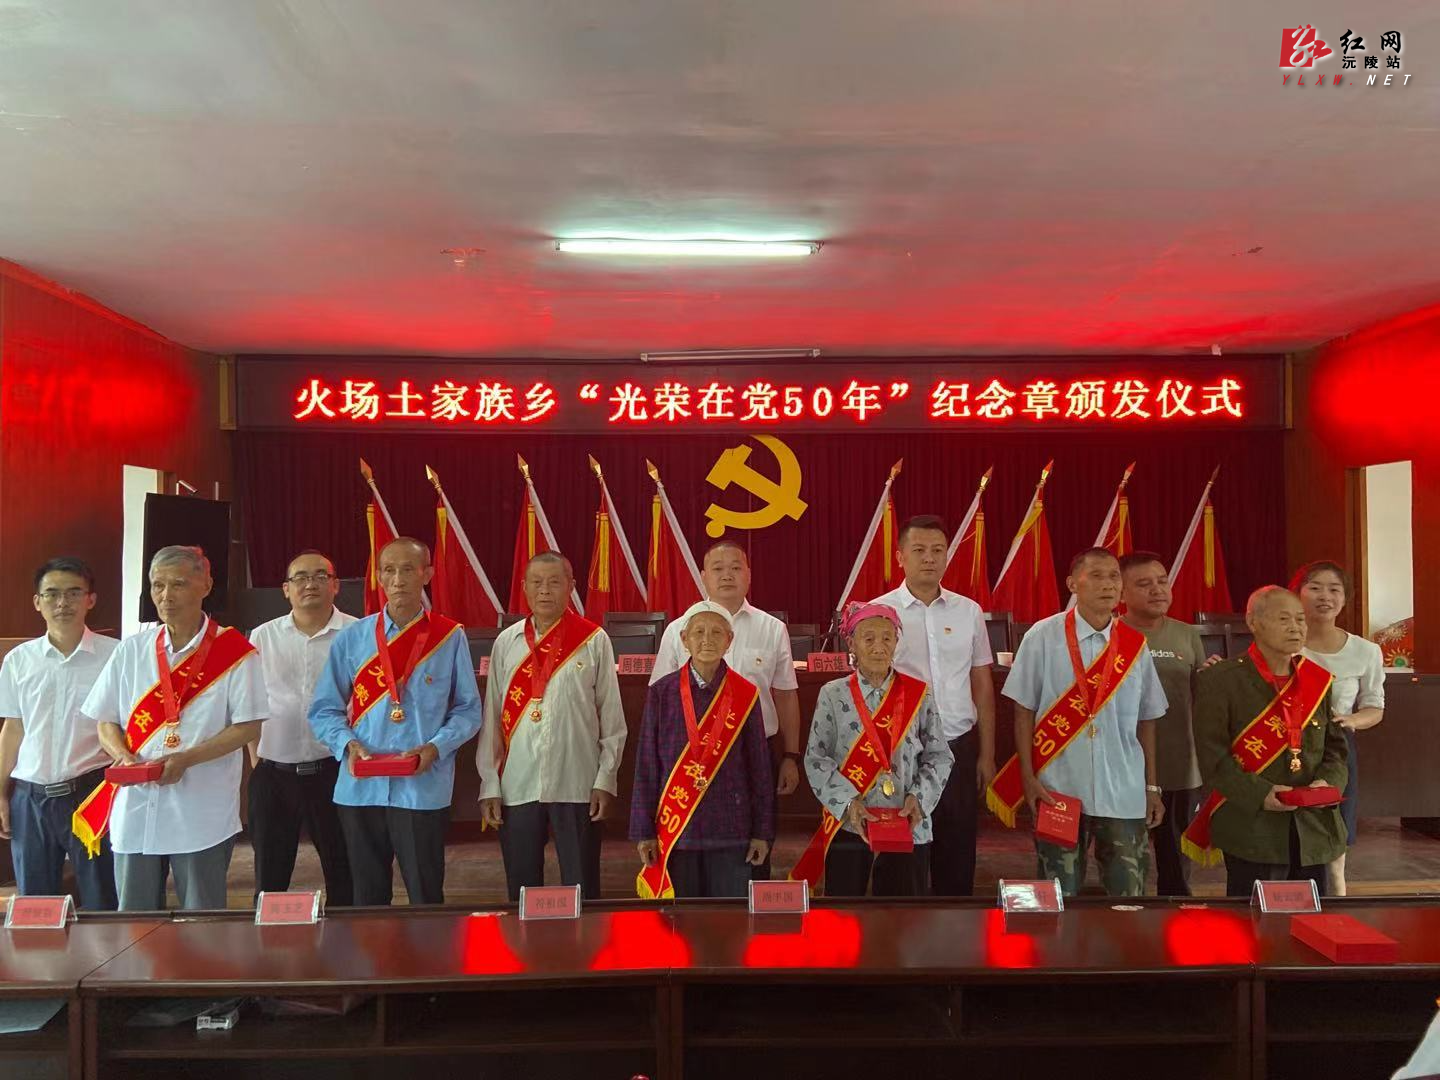 火场土家族乡举行“光荣在党50年”纪念章颁发仪式